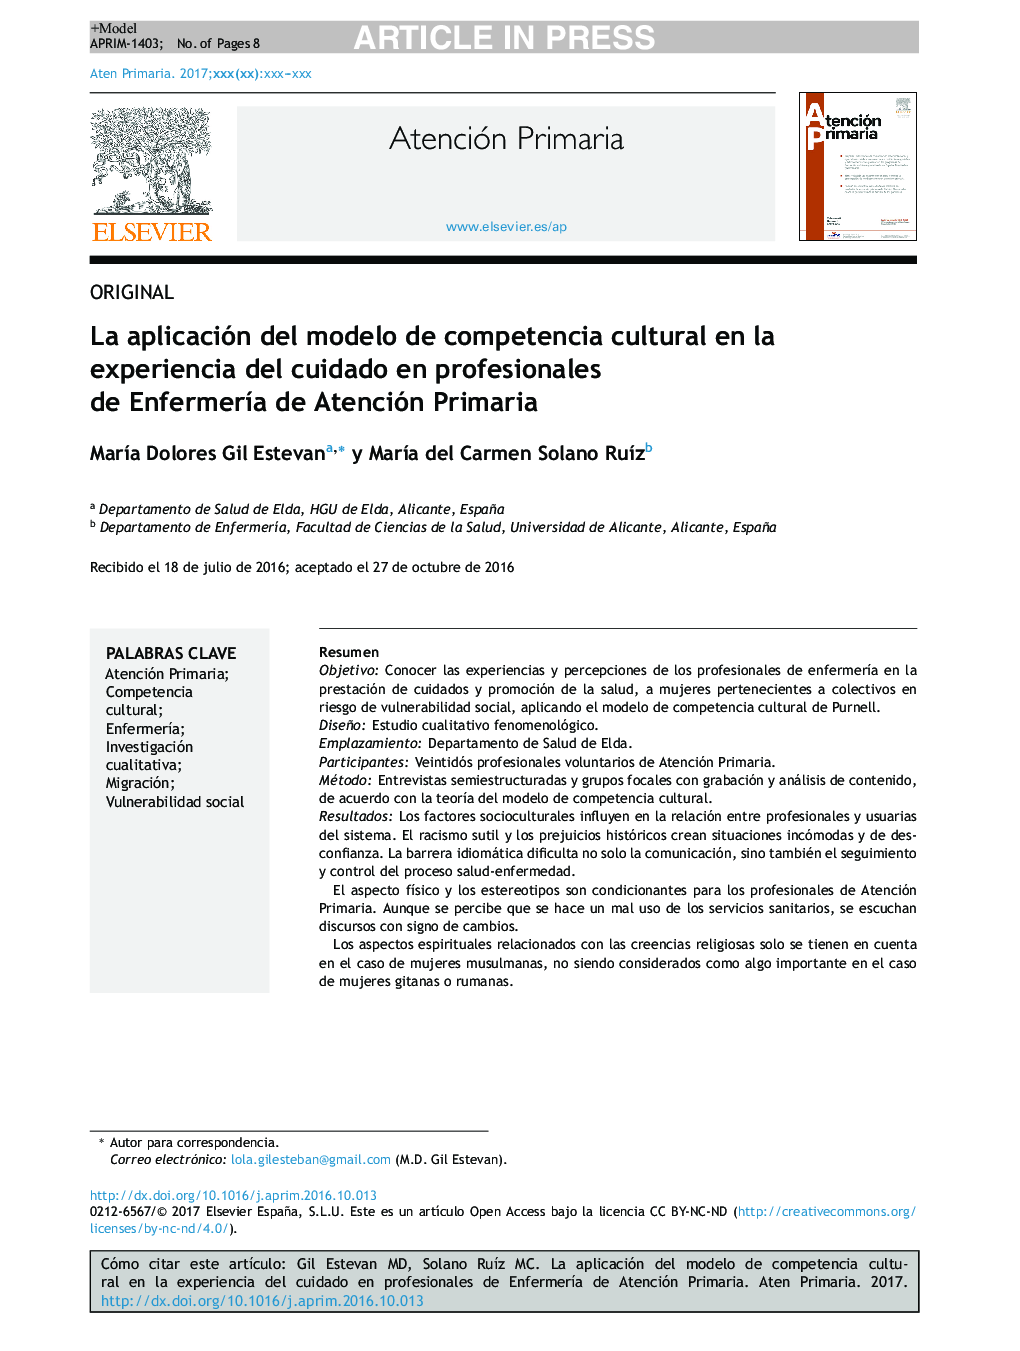 La aplicación del modelo de competencia cultural en la experiencia del cuidado en profesionales de EnfermerÃ­a de Atención Primaria